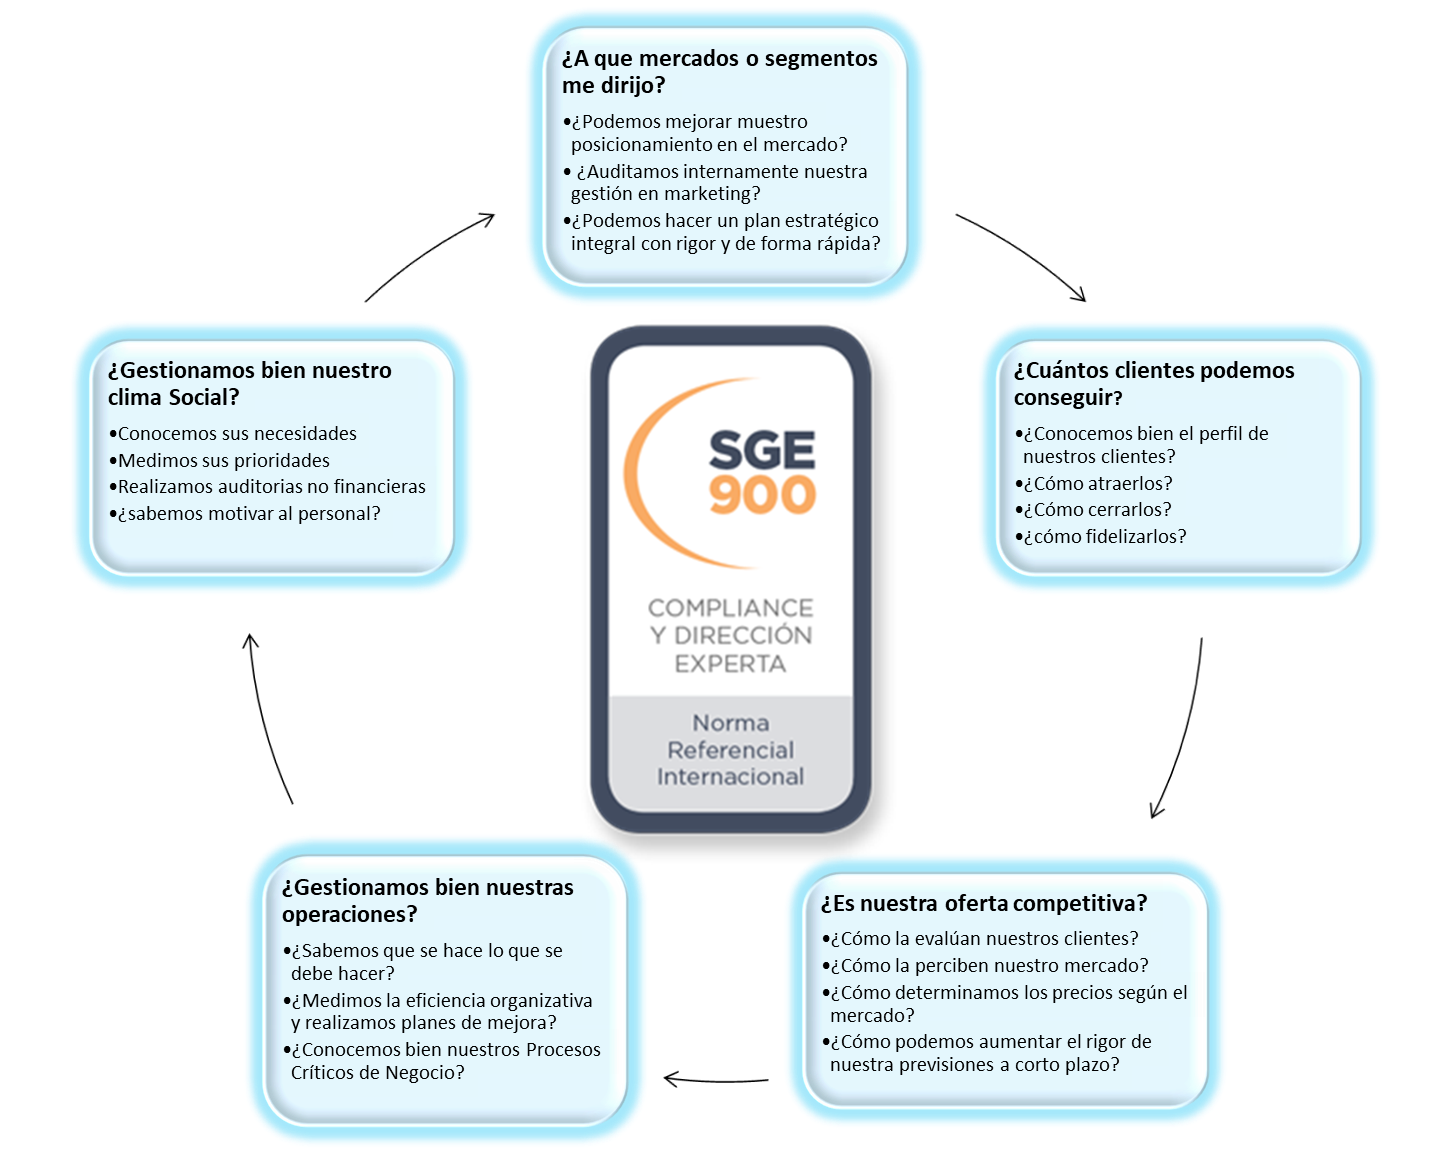 SGE 900 - Excelencia en Marketing